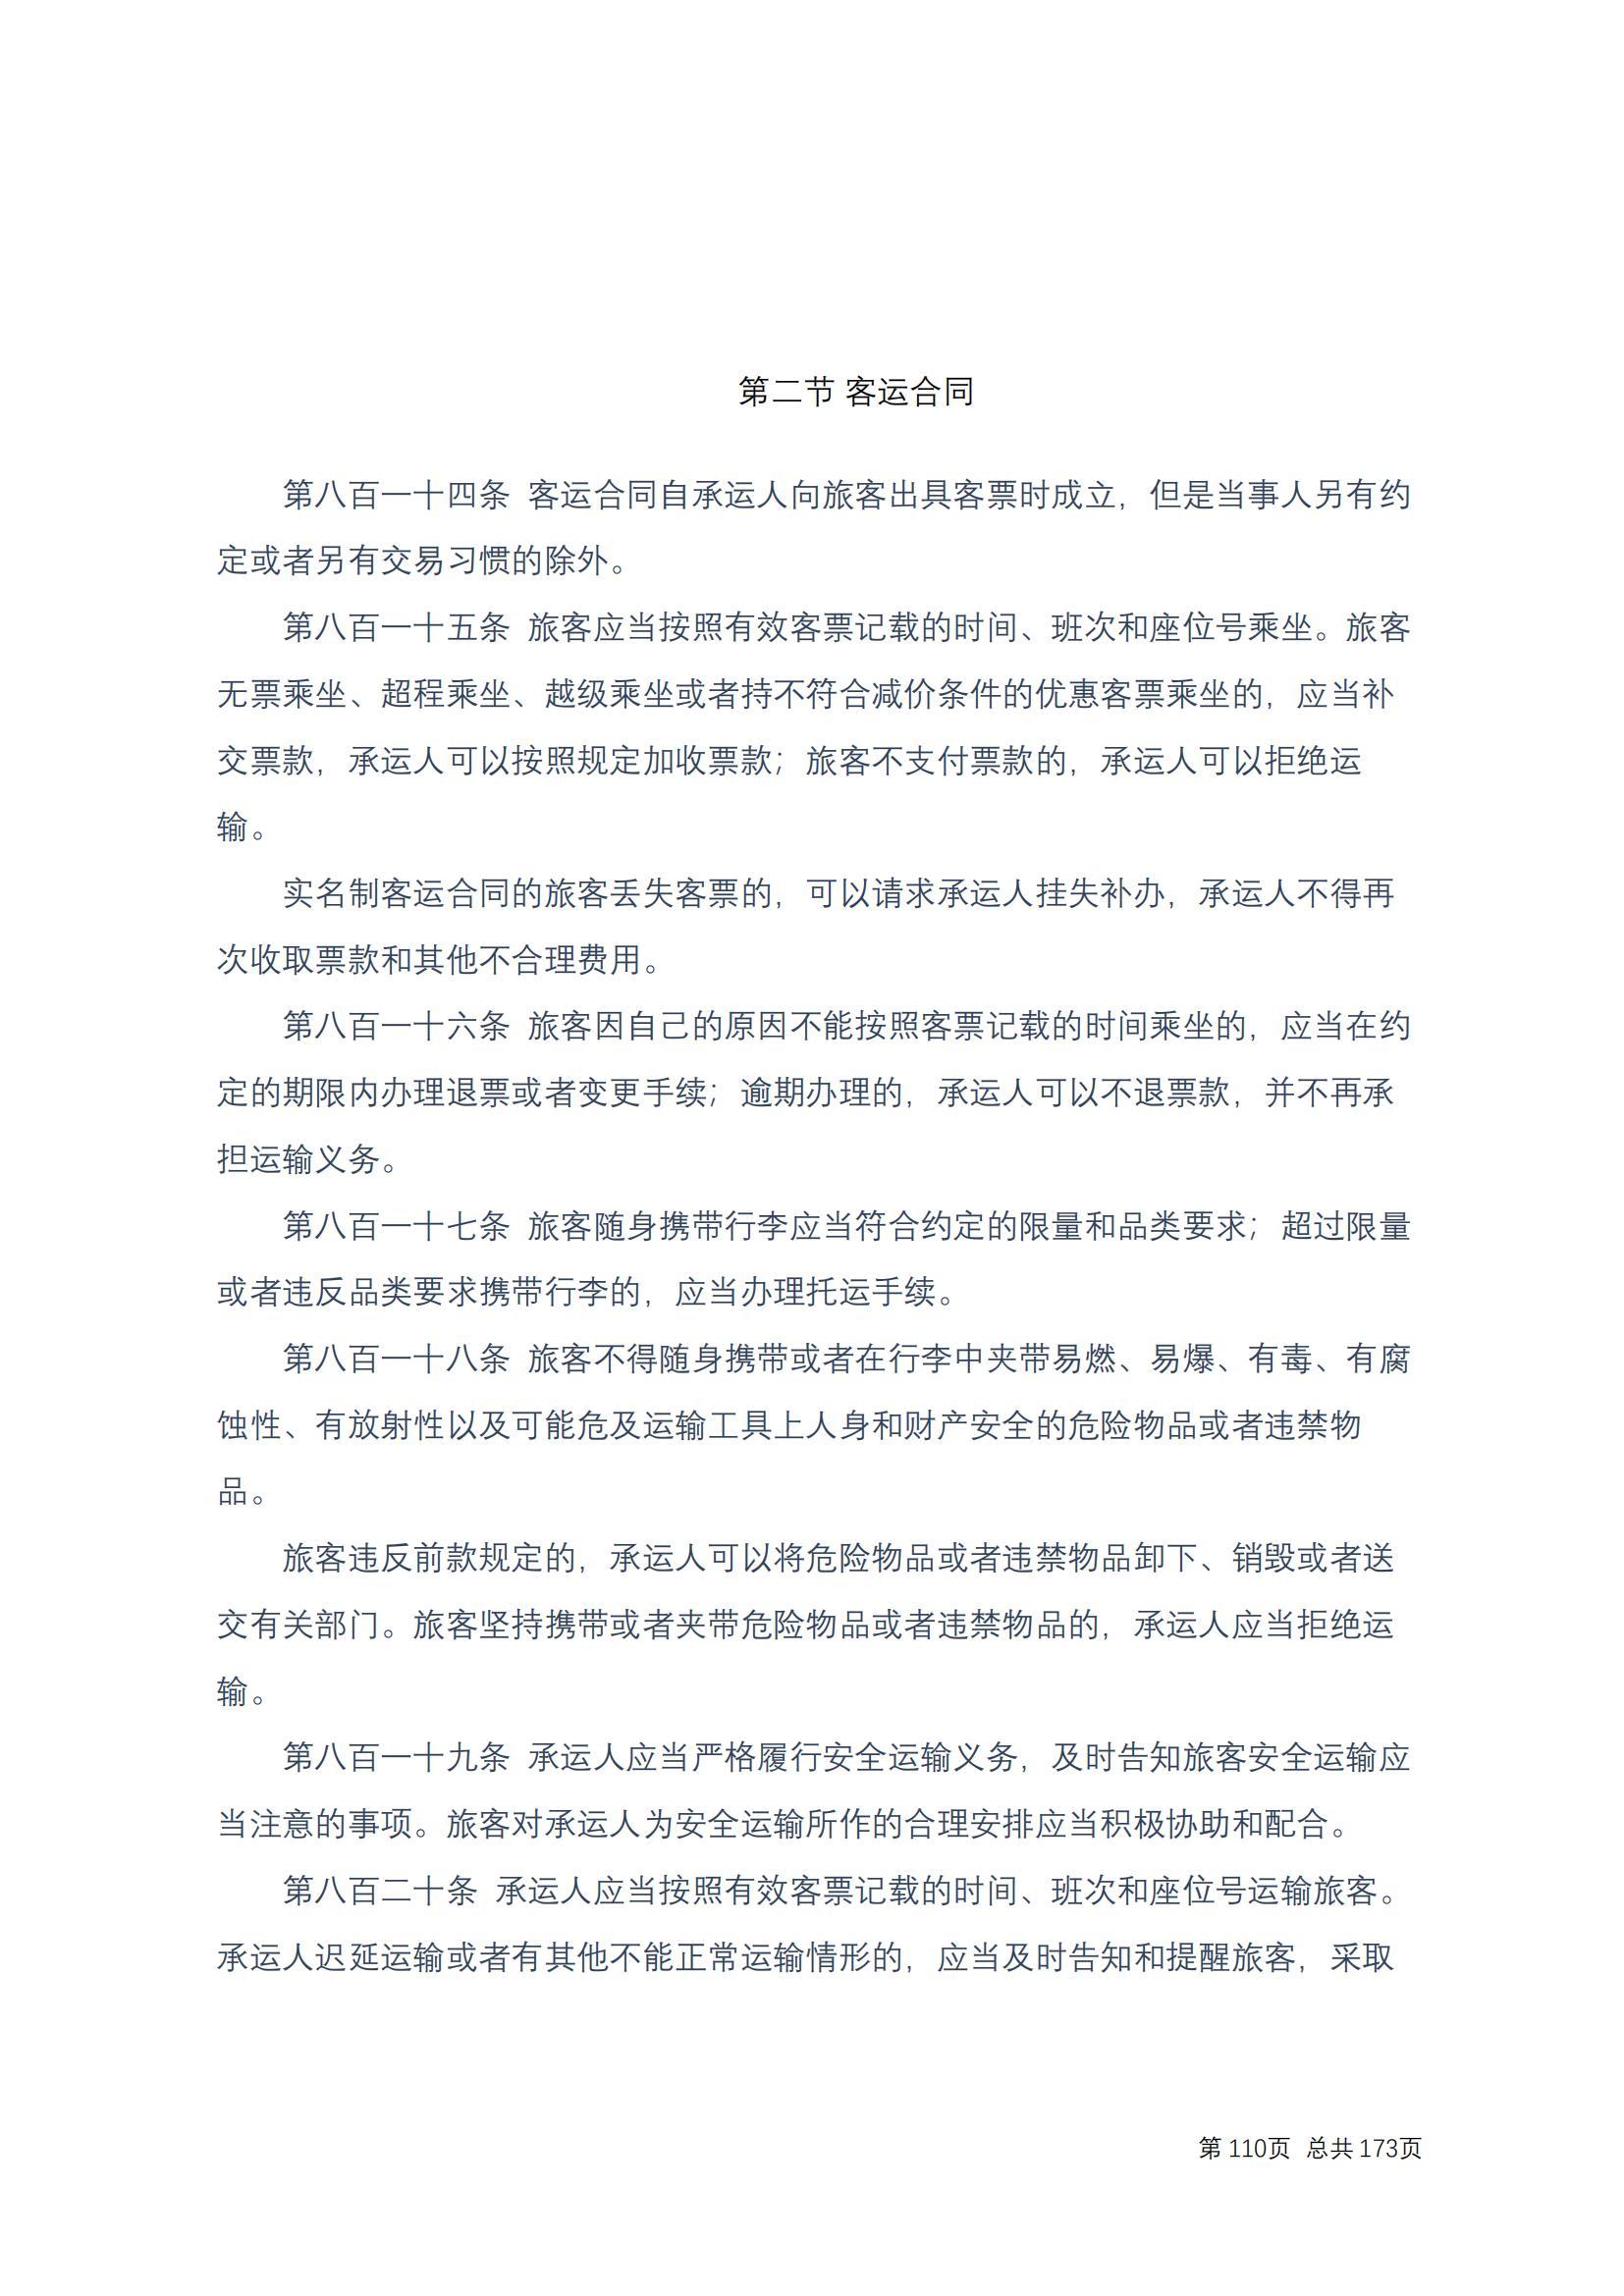 中华人民共和国民法典 修改过_109